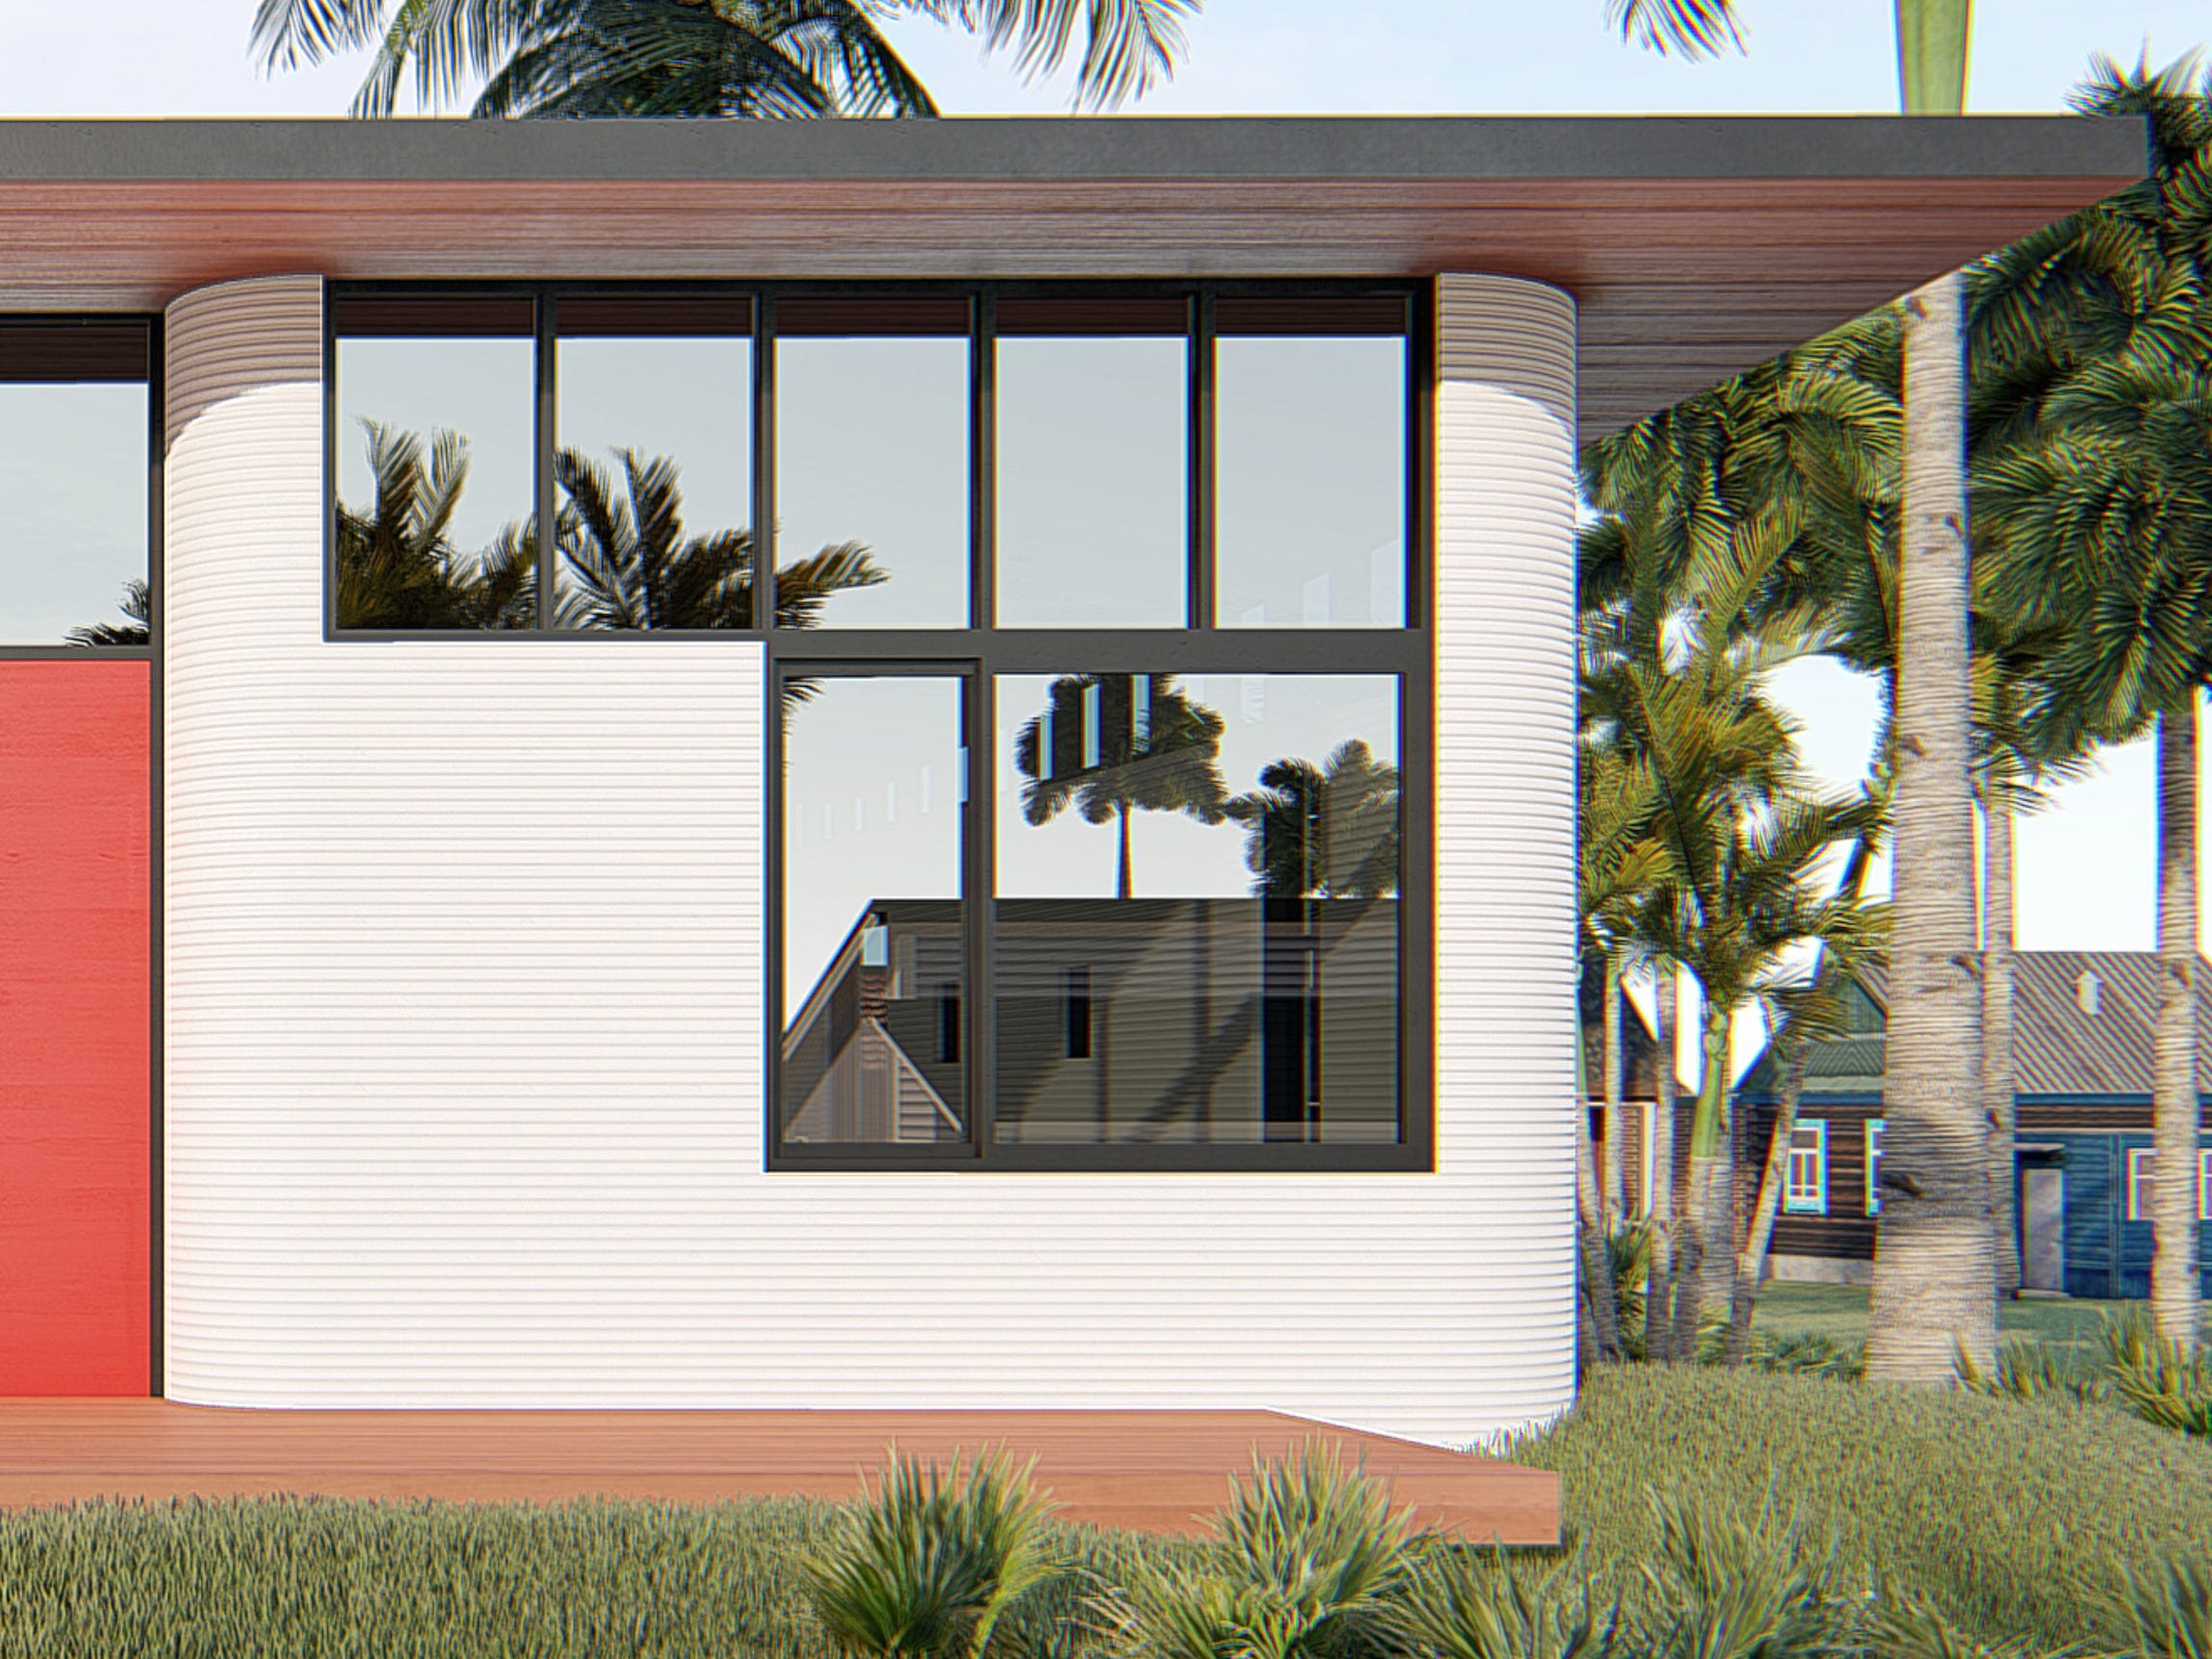 CPH-3D printed home rendering.